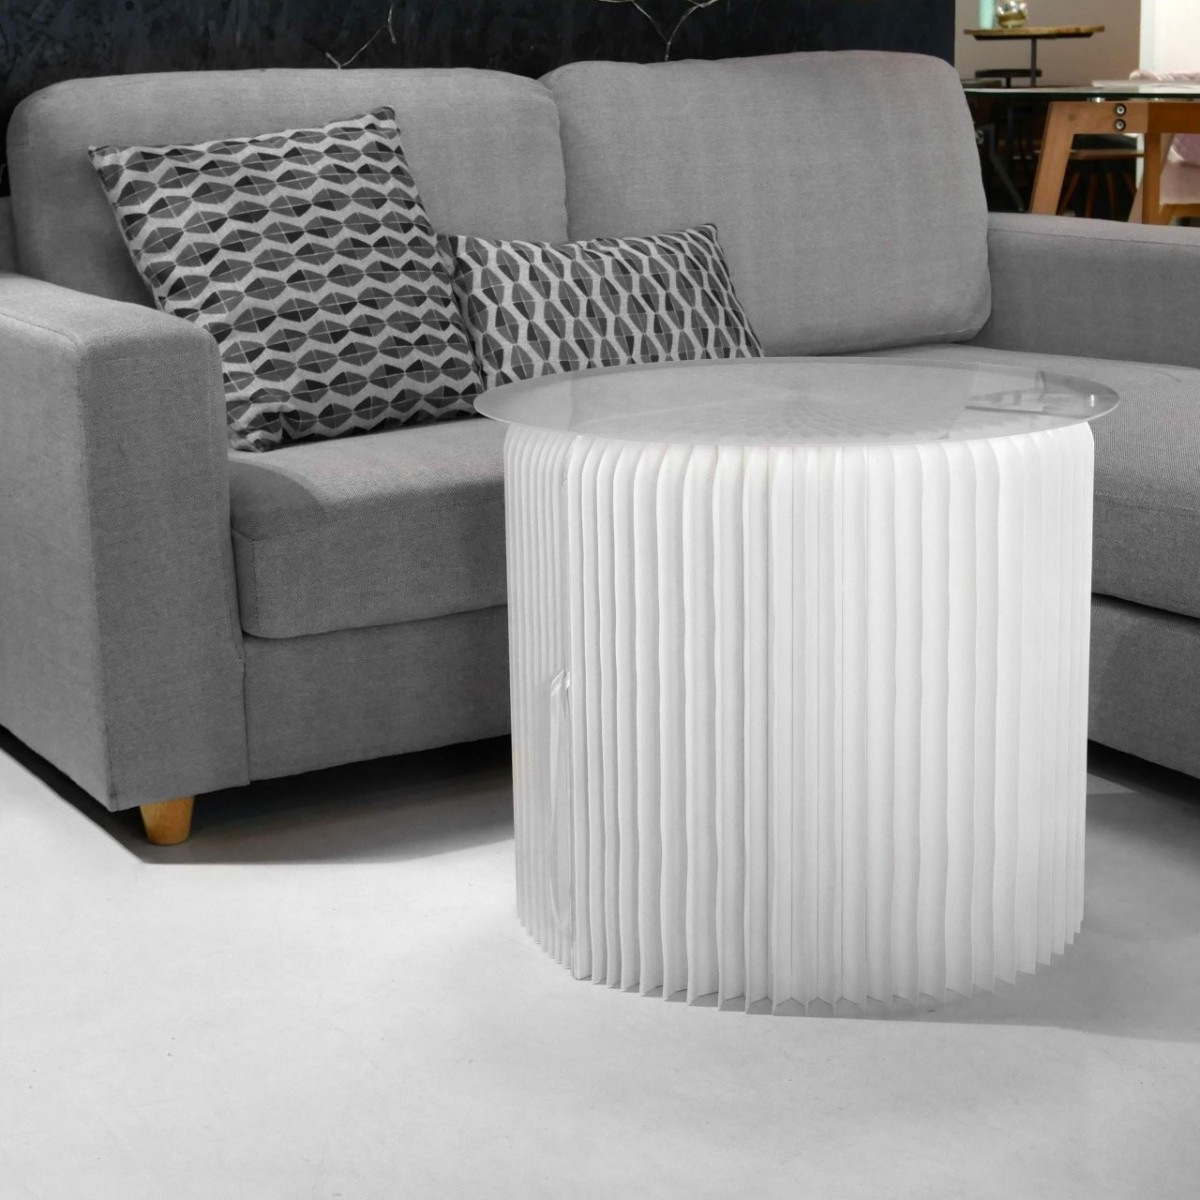 Table basse blanche en carton alvéolé posée à côté d'un canapé pour compléter le salon, avec un plateau e plexiglass pour poser des objets.